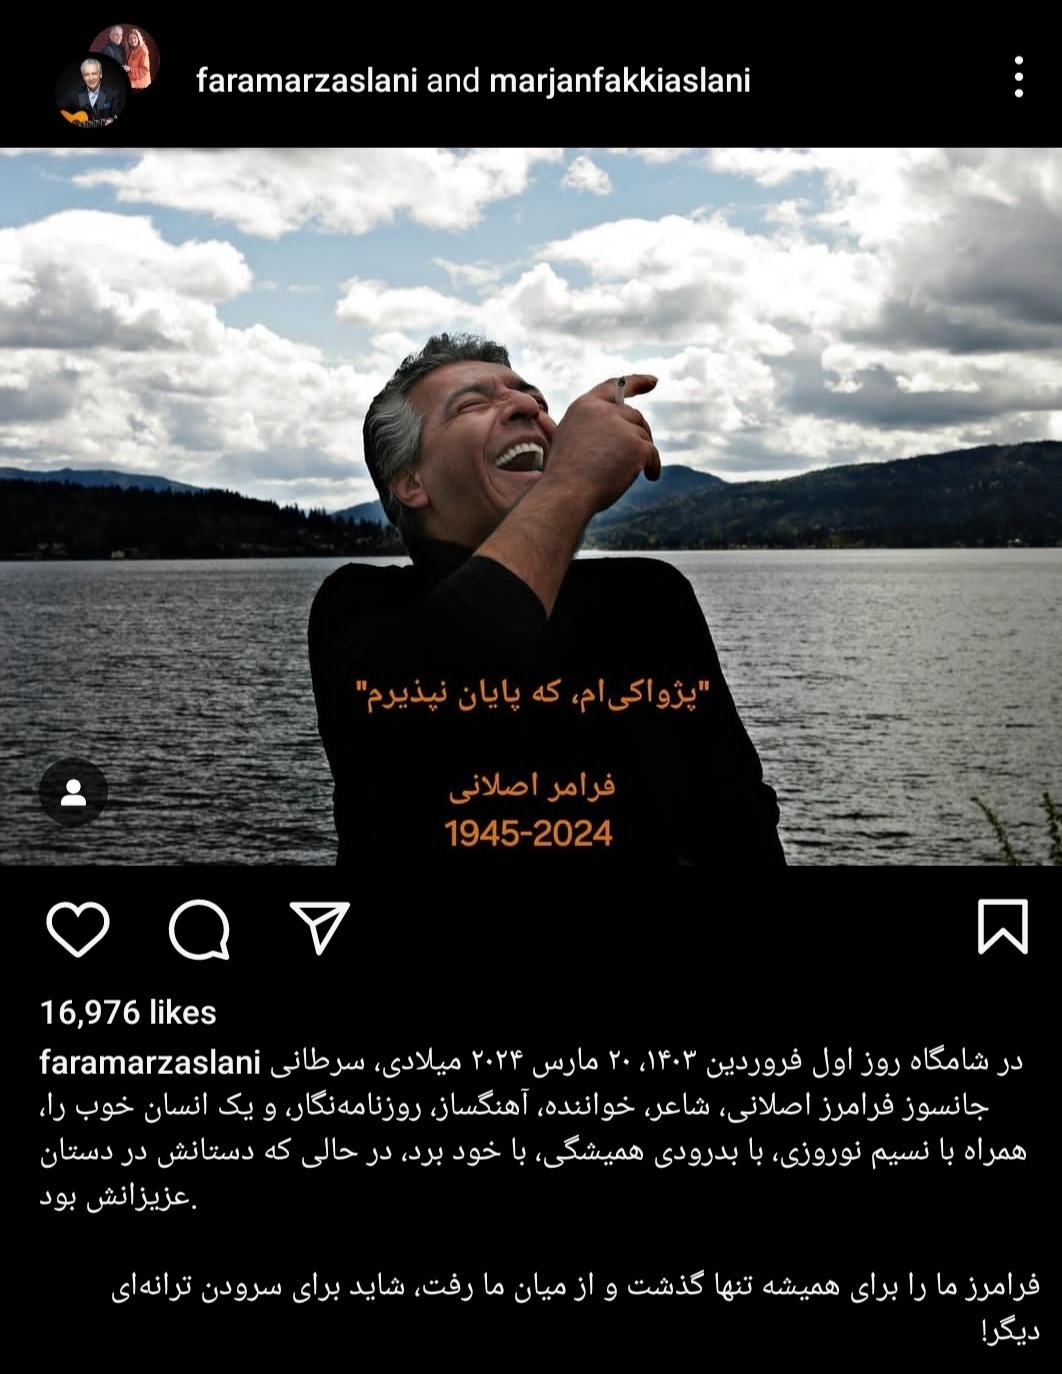 فرامرز اصلانی، خواننده معروف درگذشت